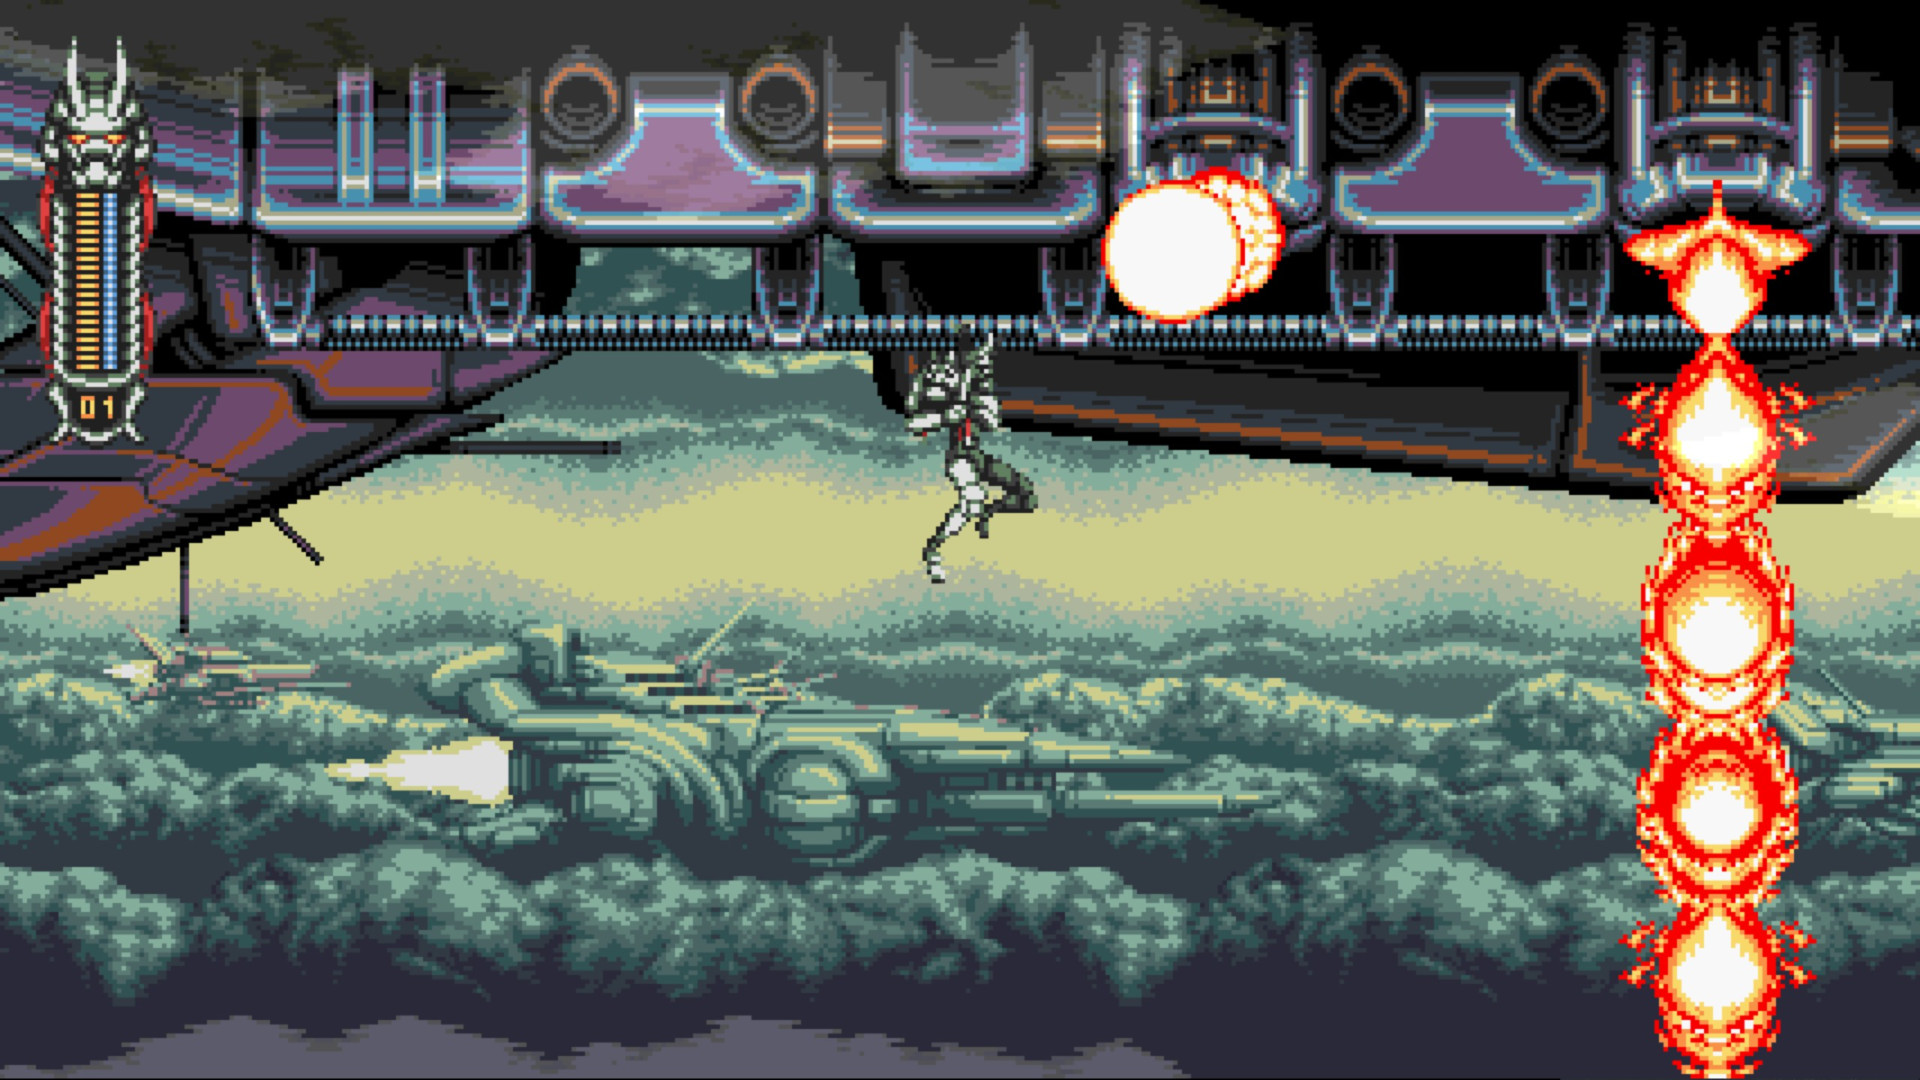 Análisis Vengeful Guardian: Moonrider, venganza ninja de 16 bits